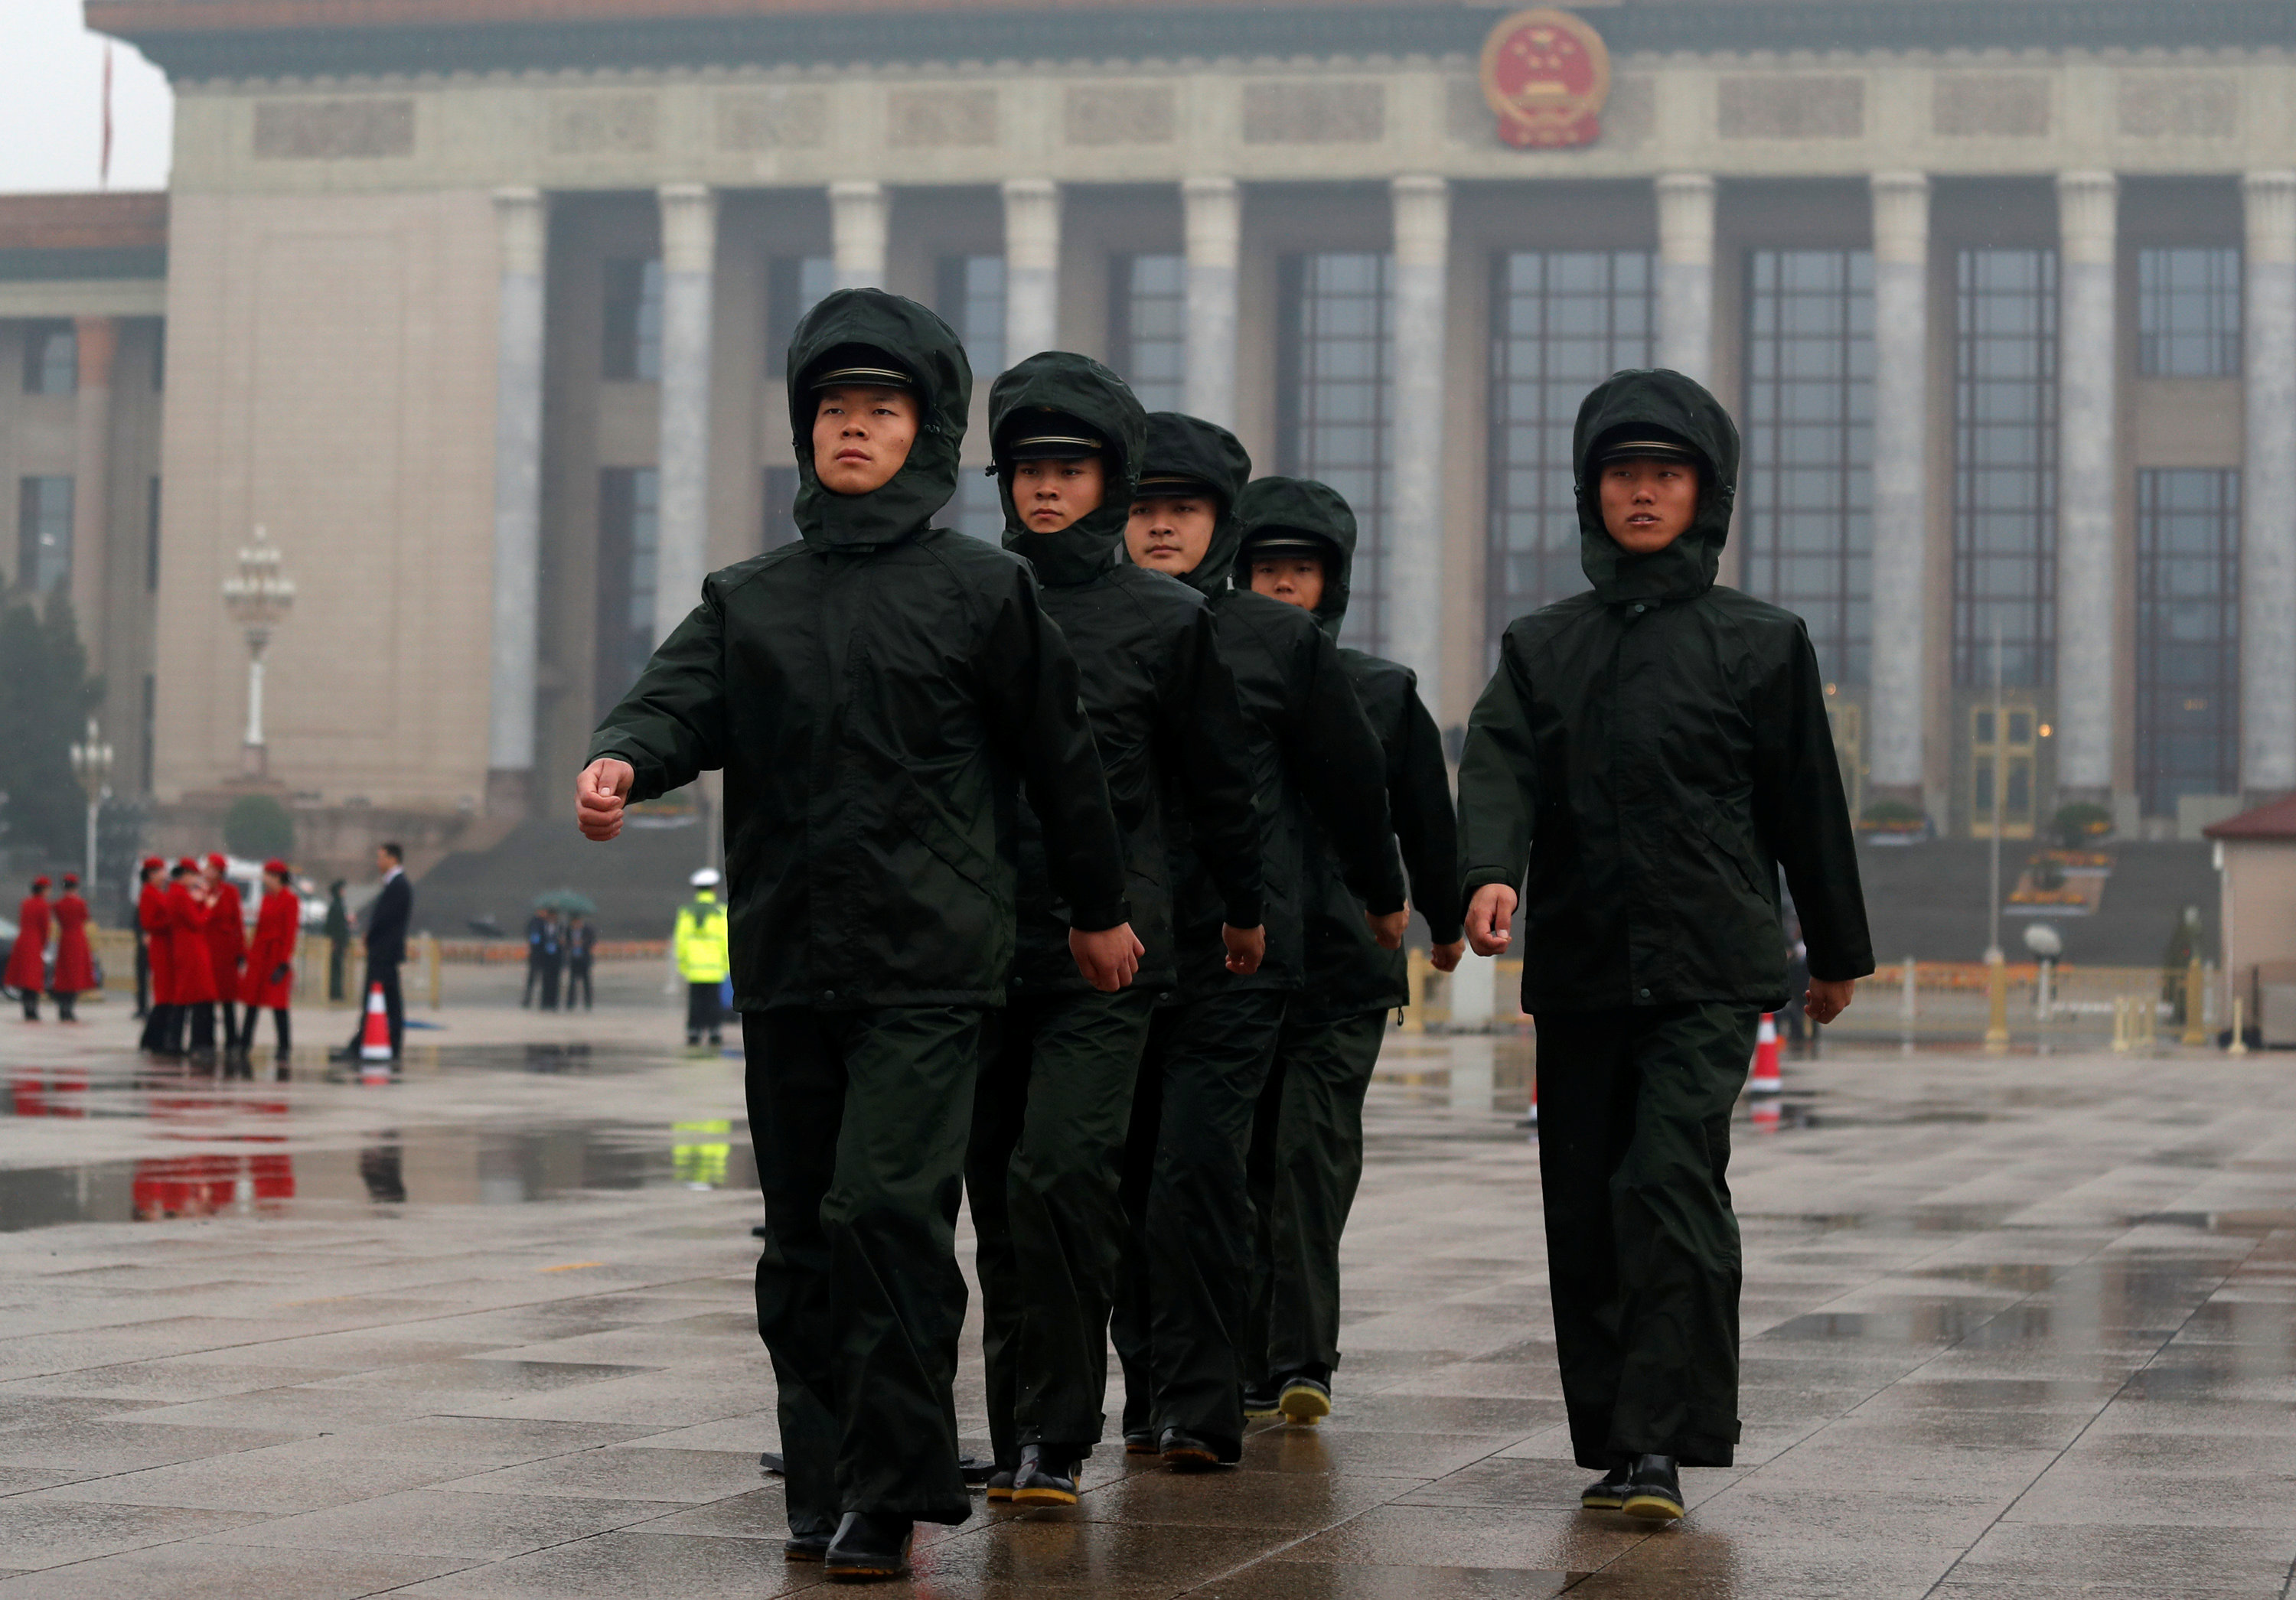 دوريات أمنية فى محيط قاعة الشعب الكبرى بالصين